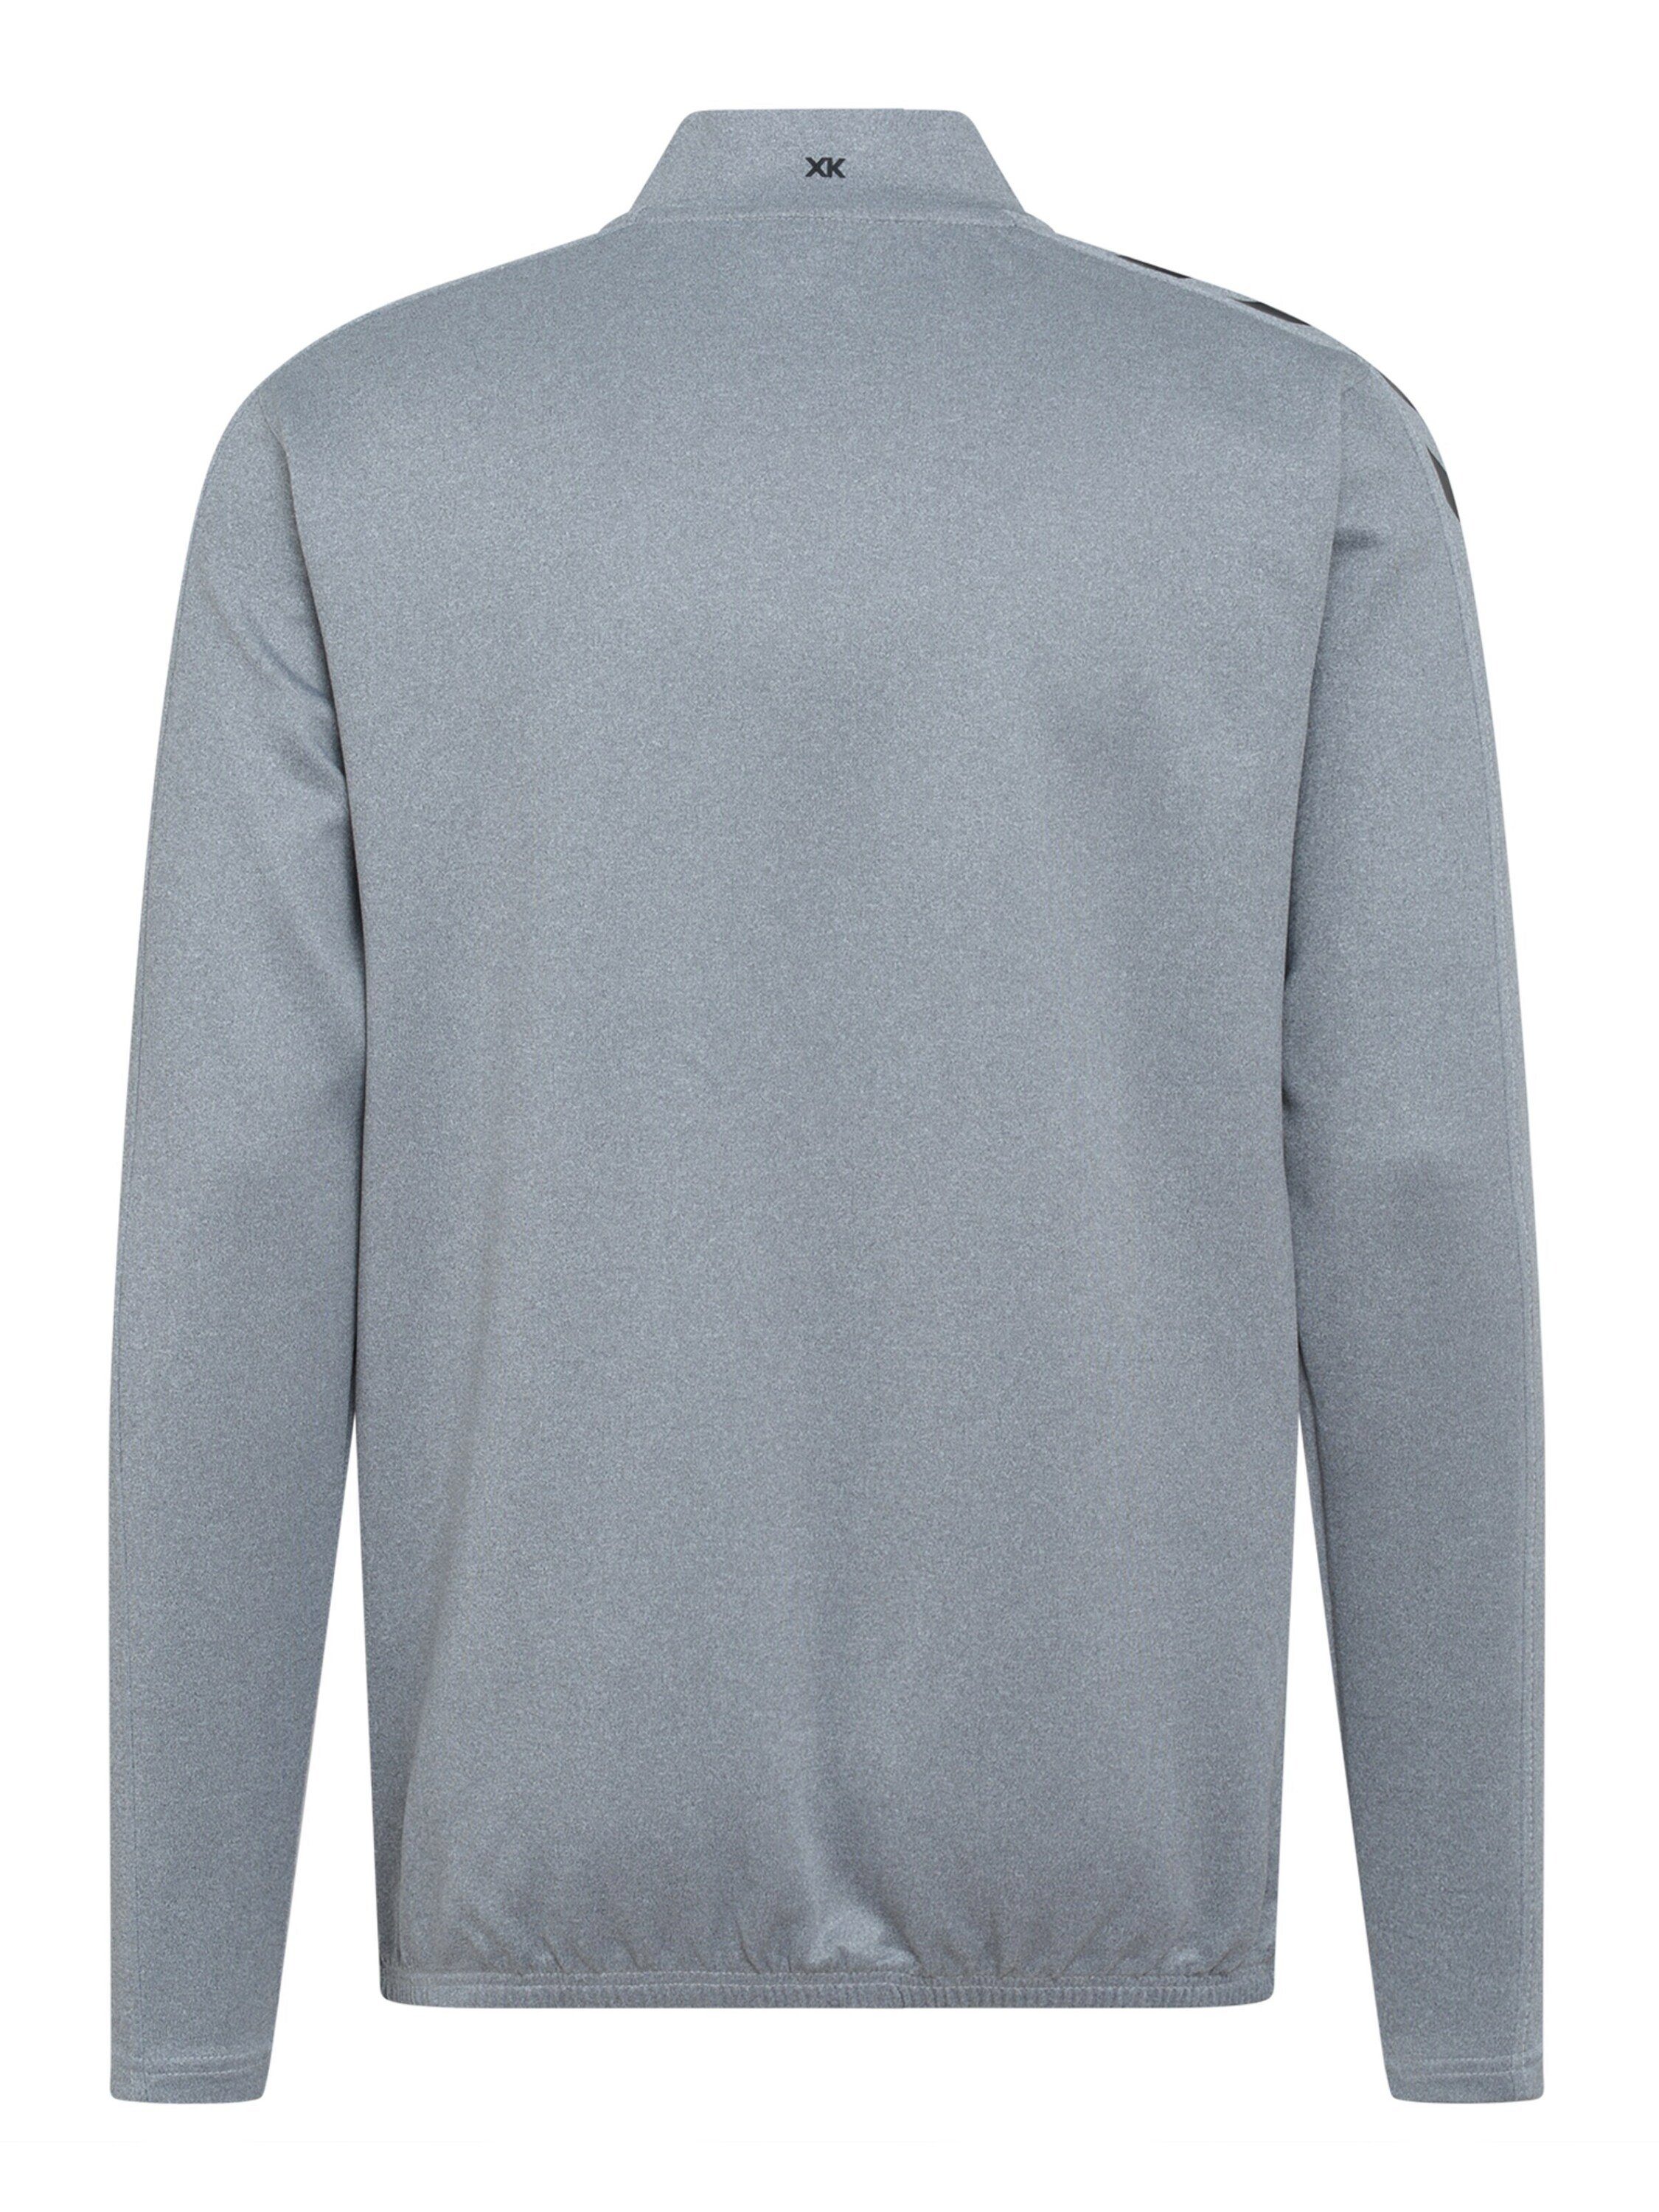 Details (1-tlg) grau hummel Sweatshirt Plain/ohne